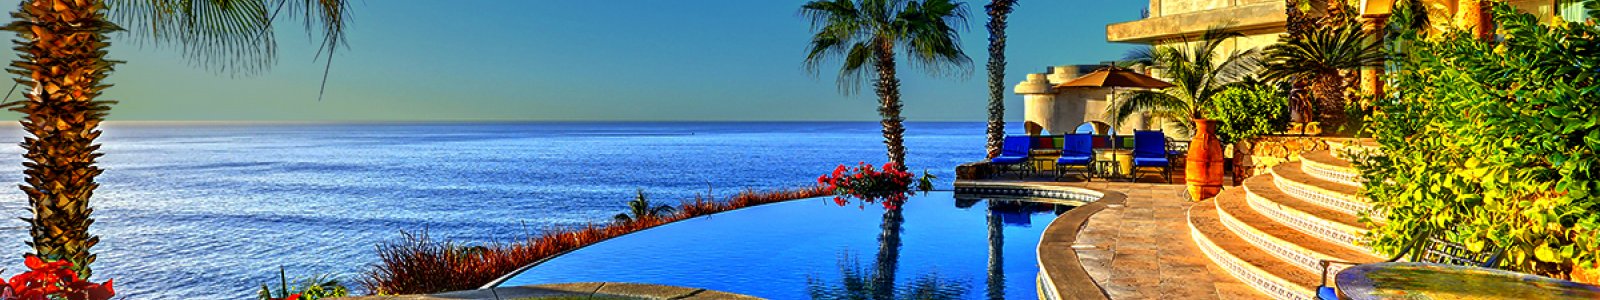 Enter the $10,000 Exotic Estates Cabo Villa Escape Sweeps!